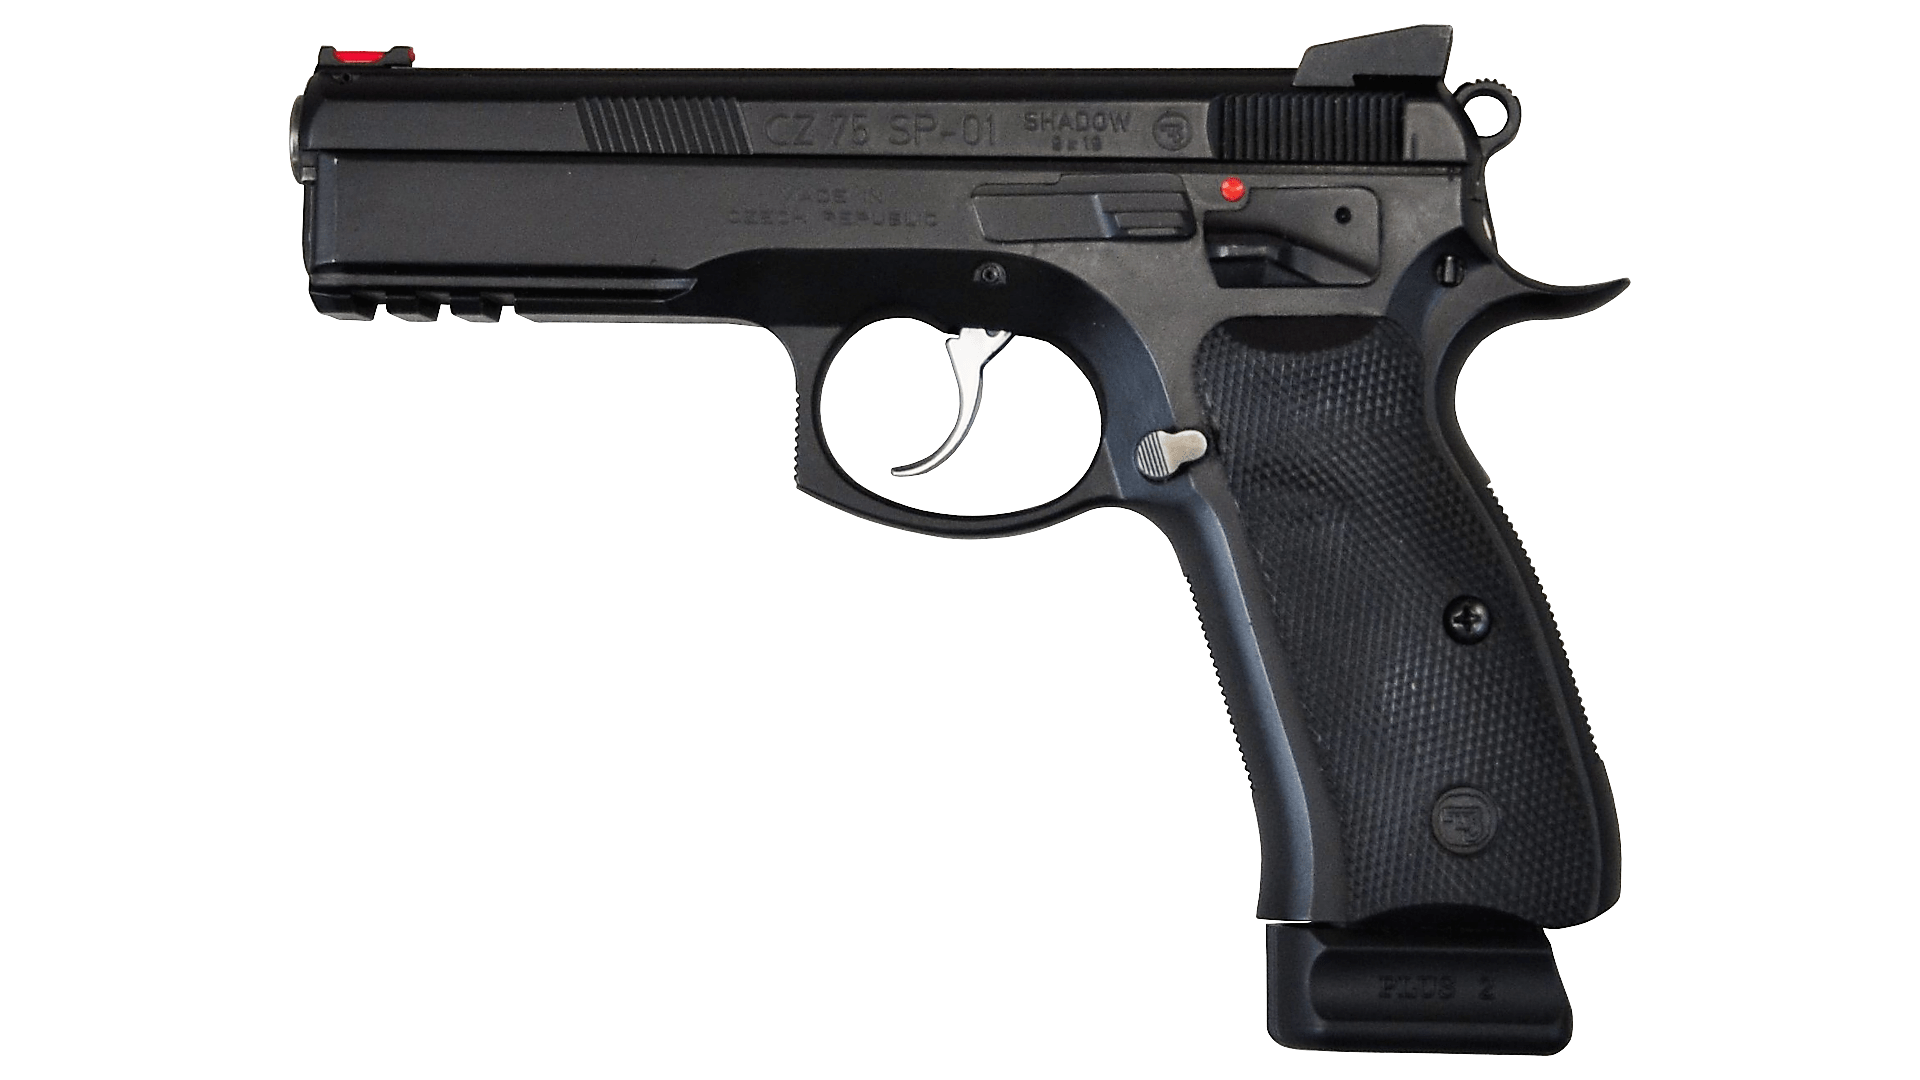 CZ 75 SP-01 Shadow pistolet centralnego zapłonu kaliber 9x19 mm